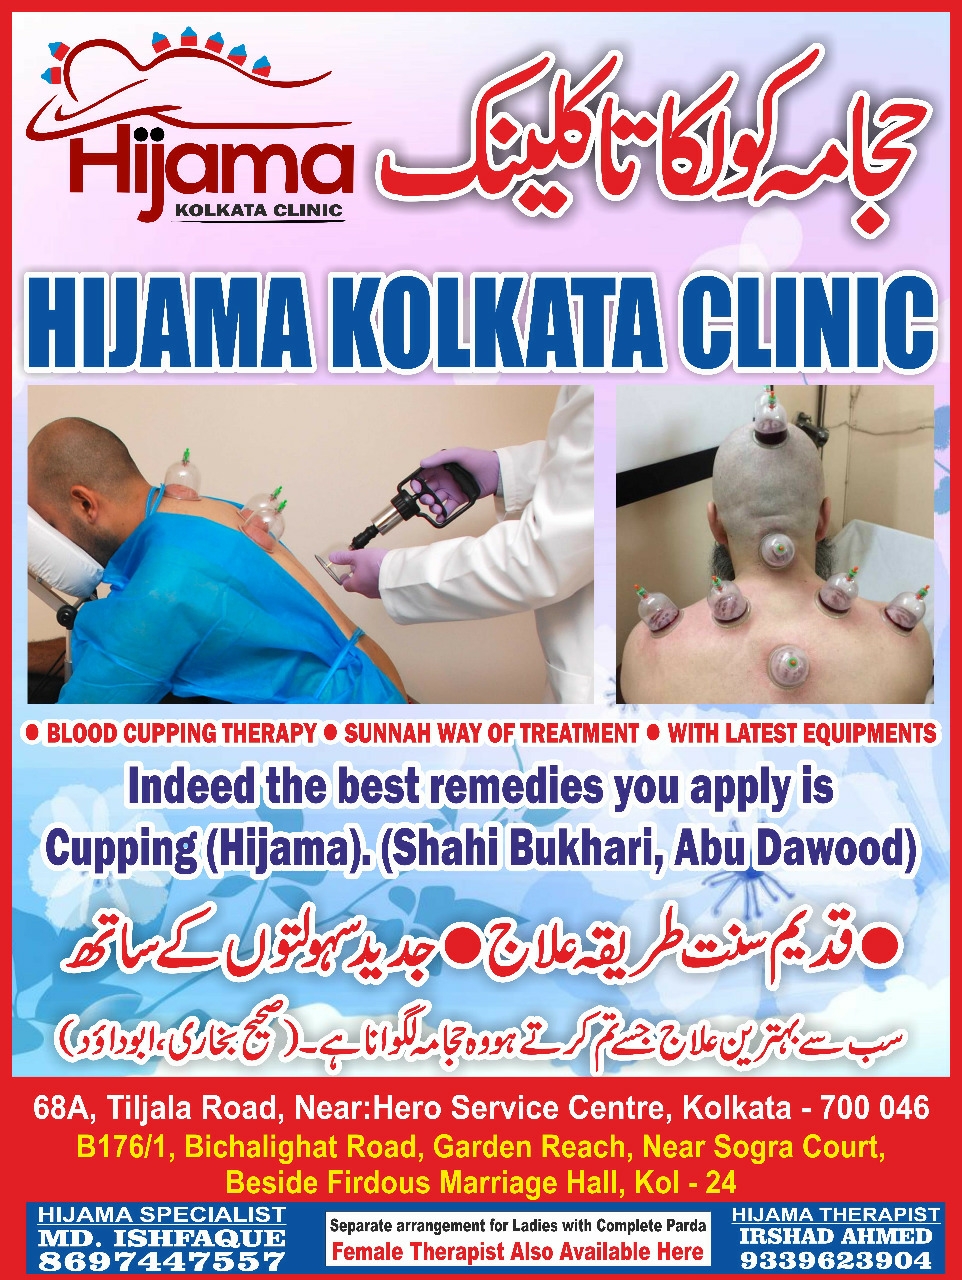 Hijama kolkata clinic